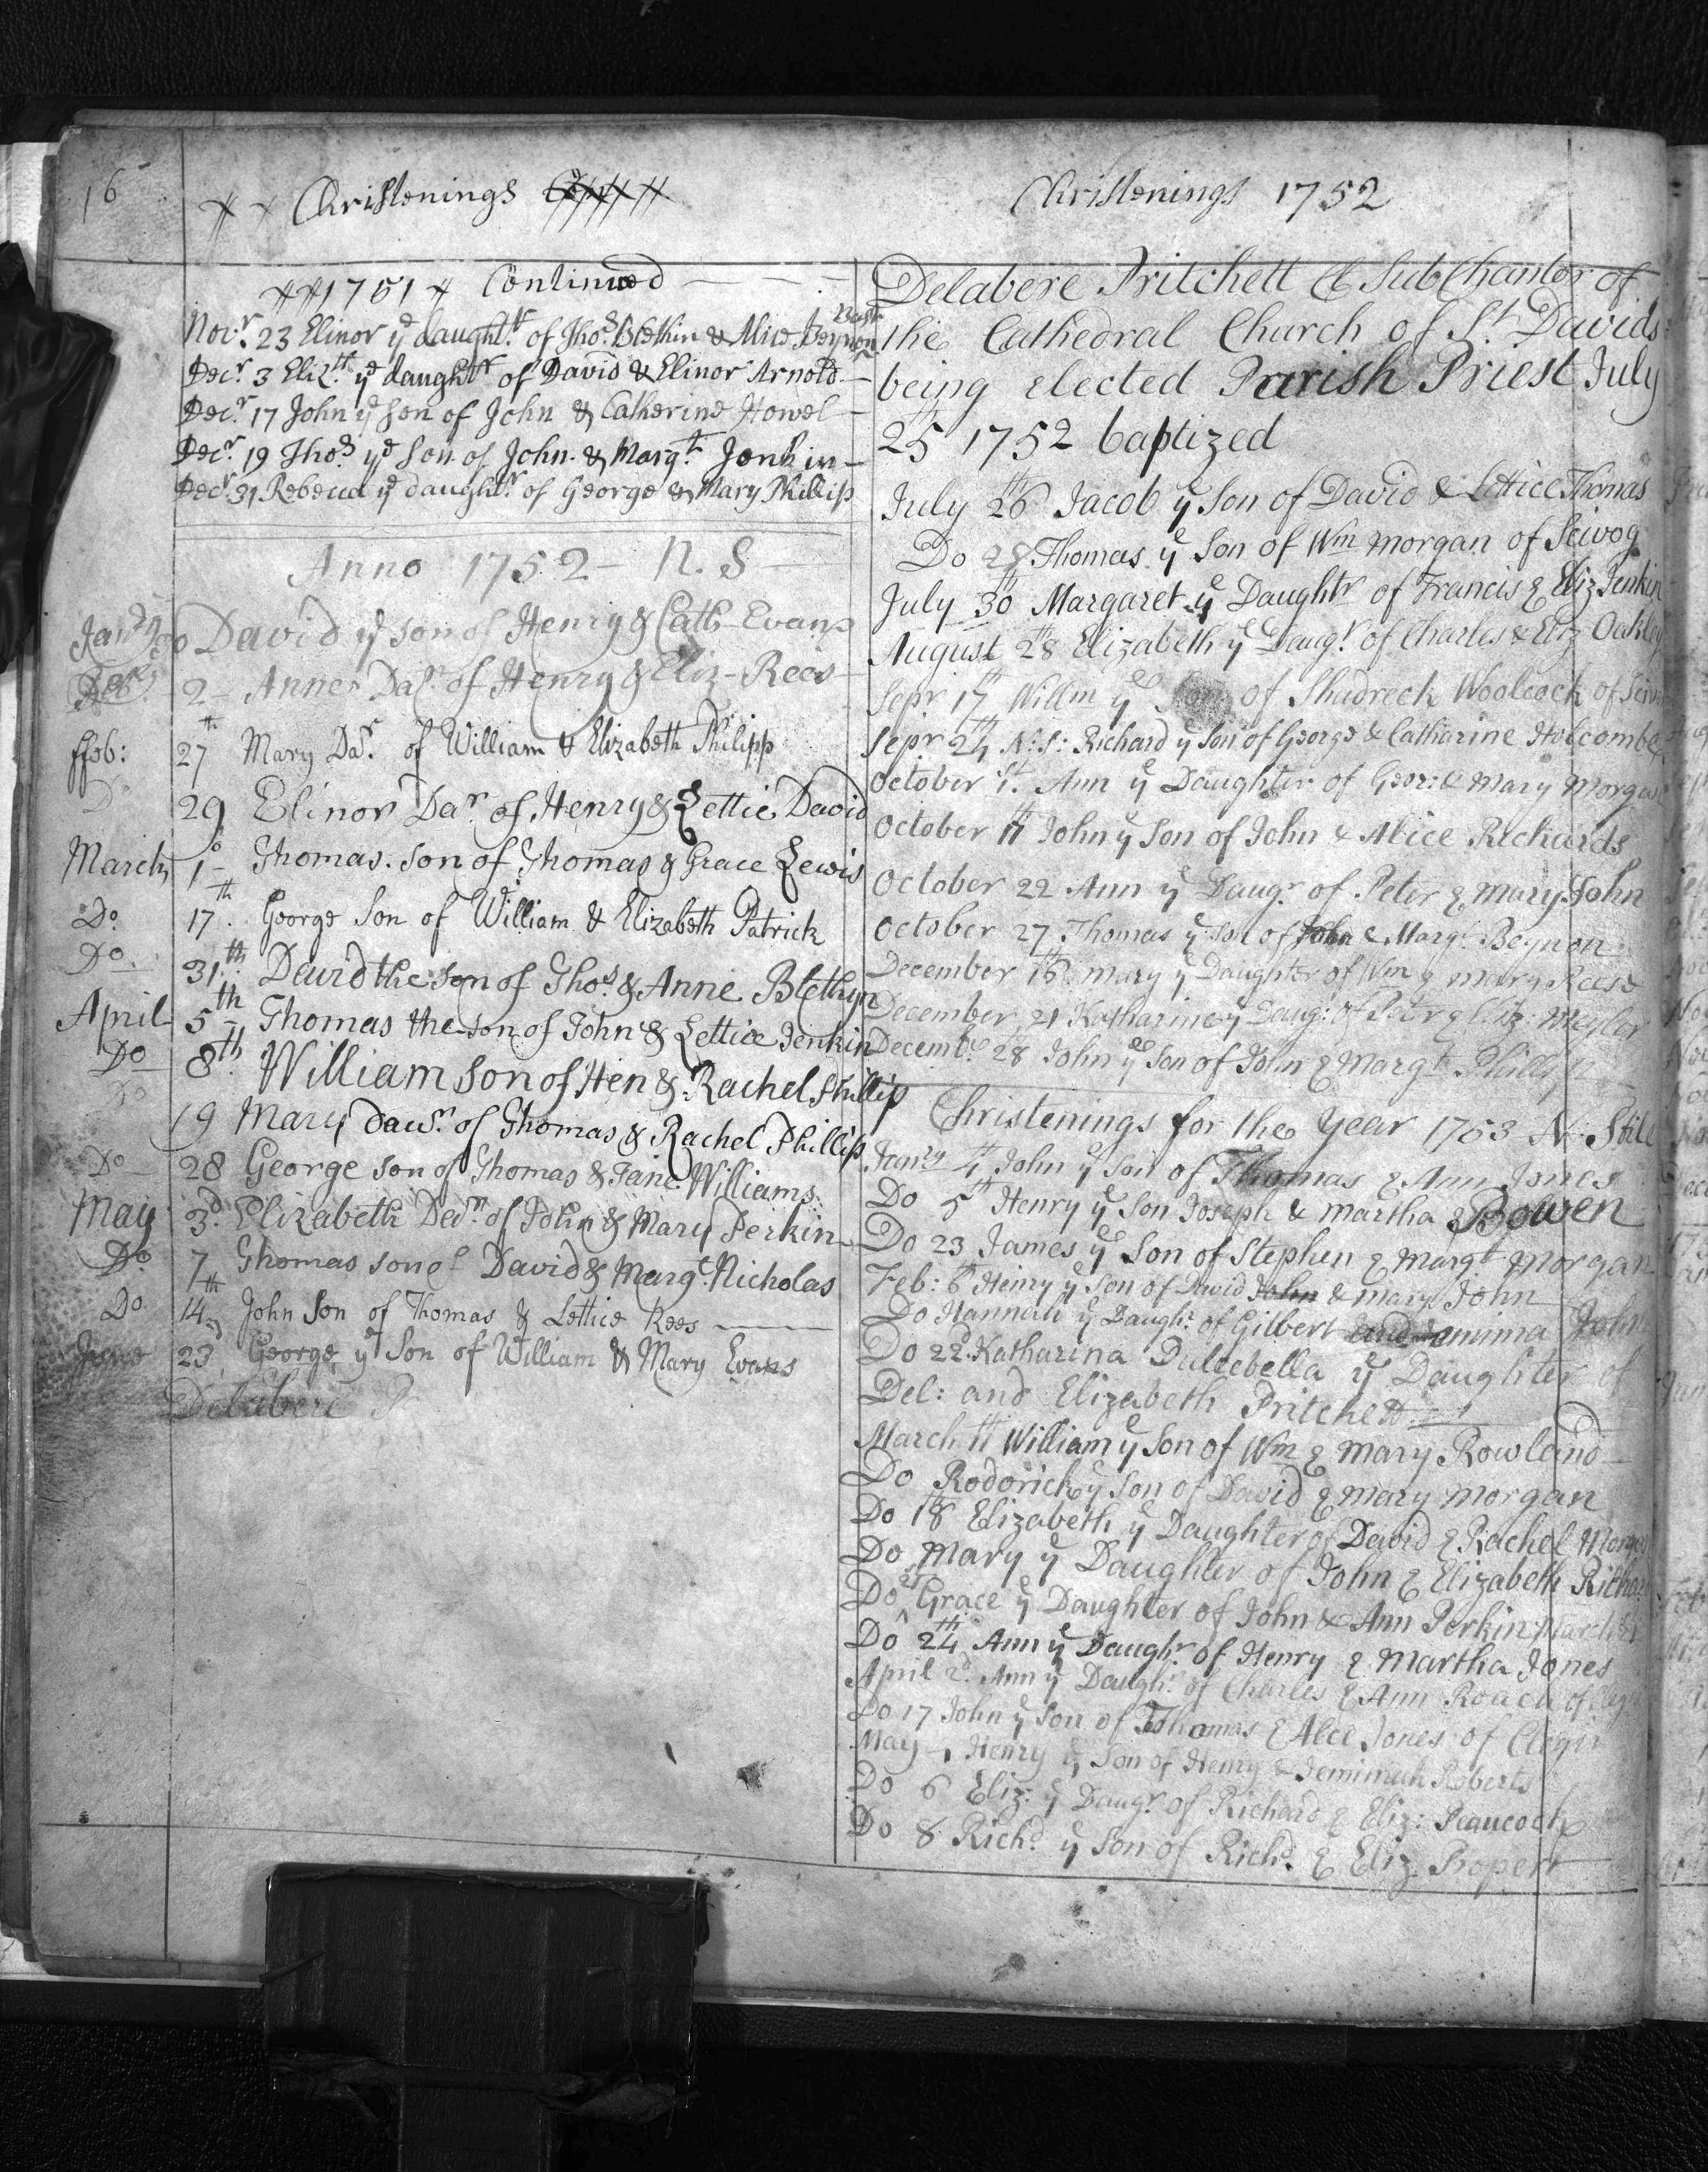 1752 baptism, Delabere Pritchett